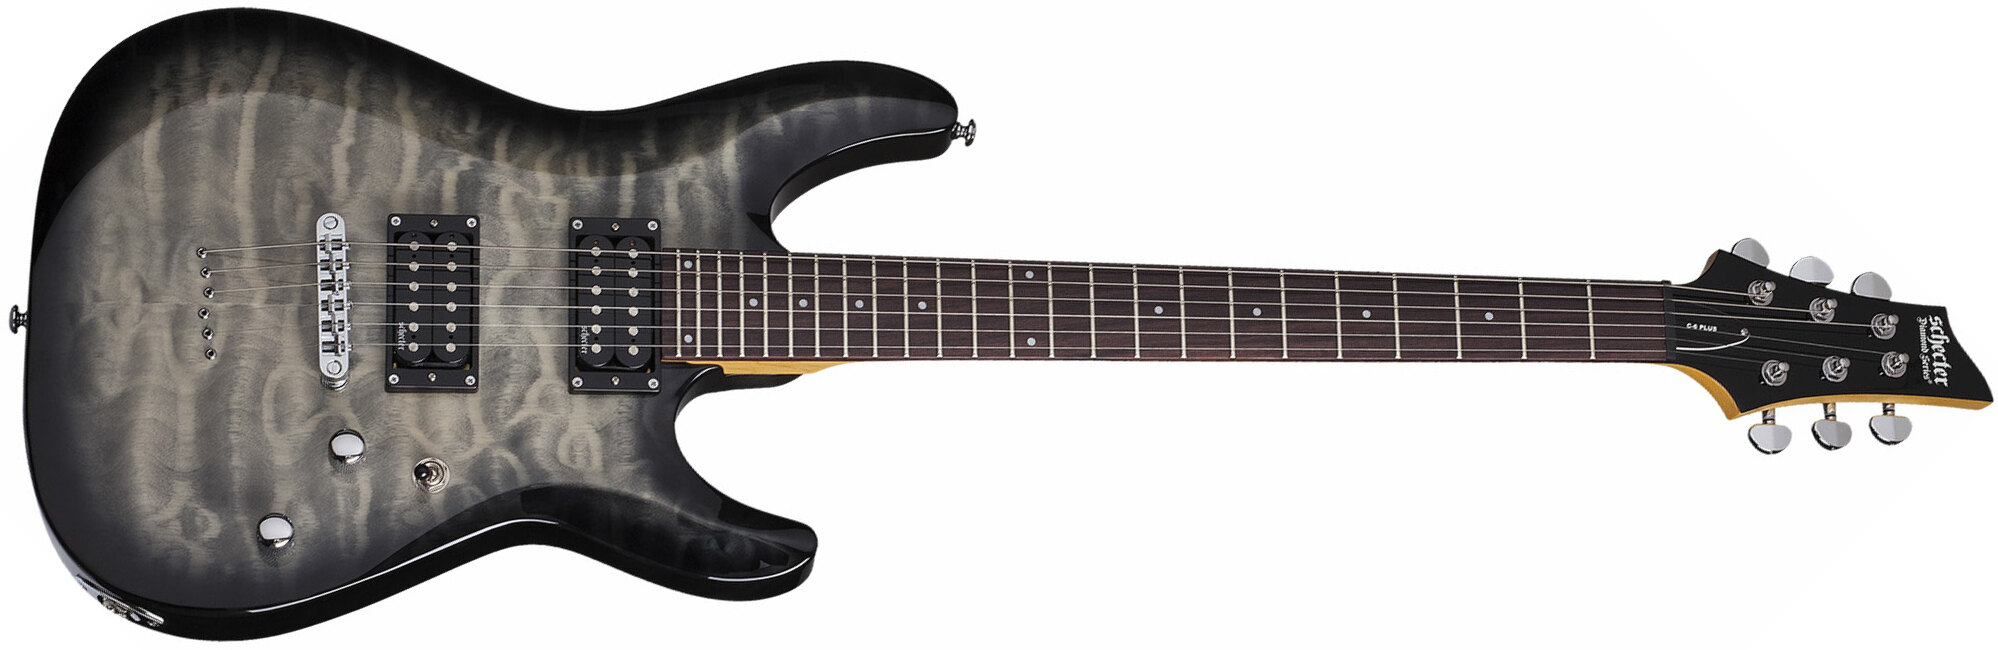 Schecter C-6 Plus 2h Ht Rw - Charcoal Burst - Double cut electric guitar - Main picture